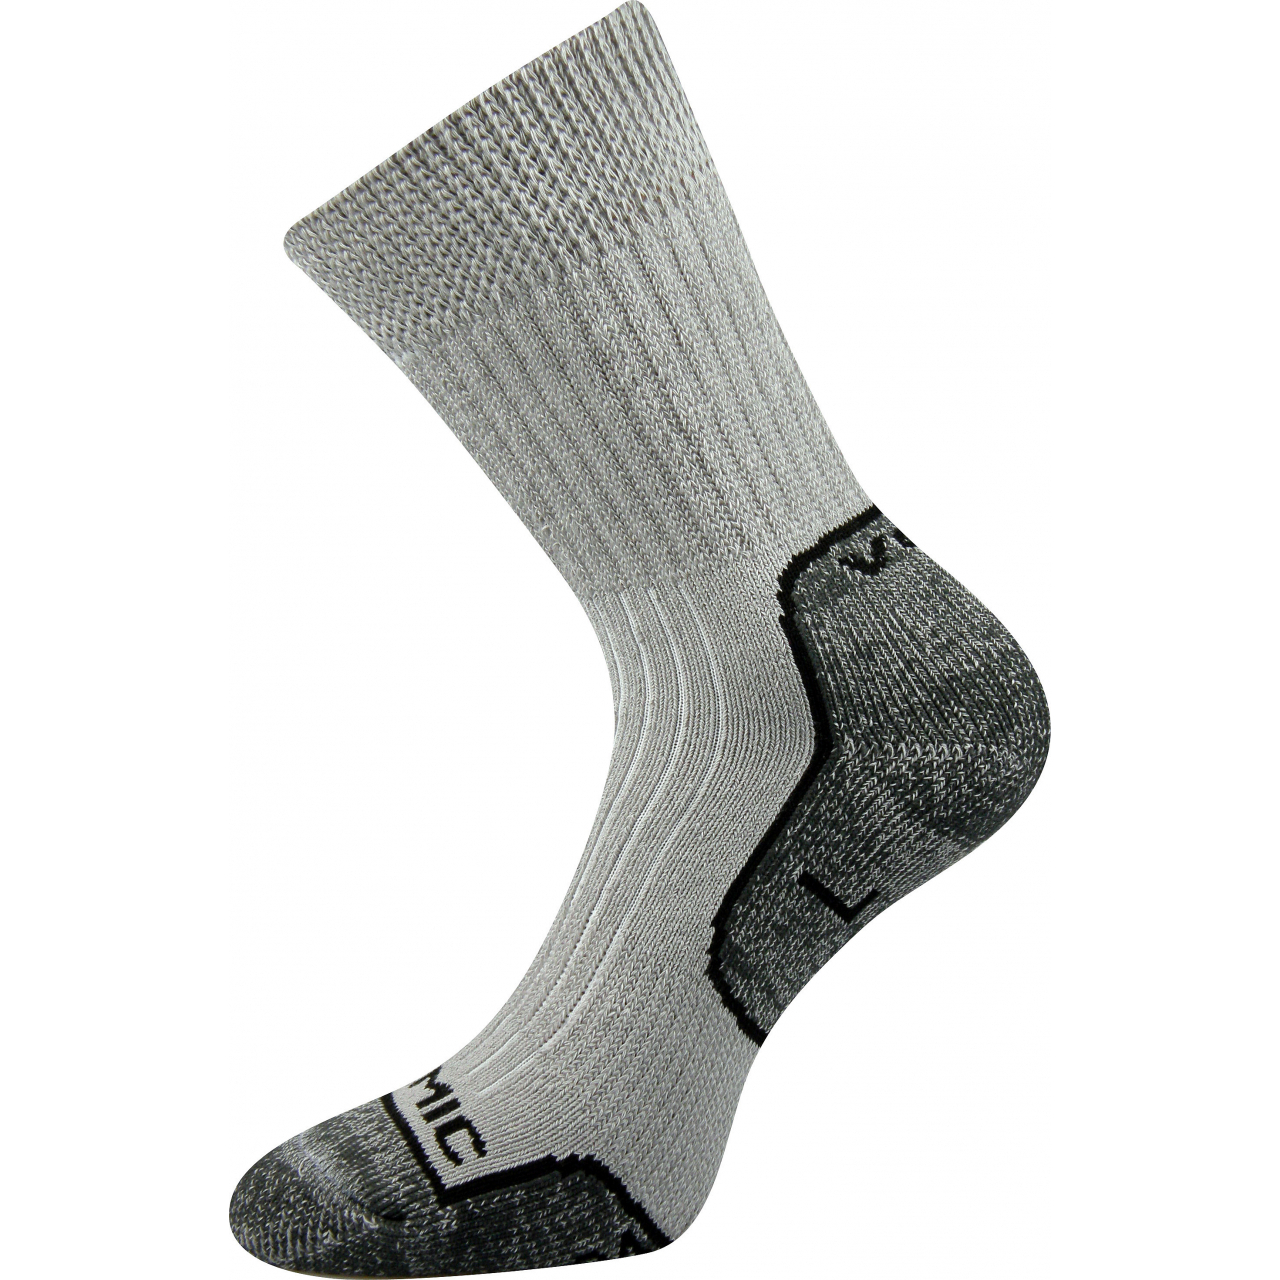 Ponožky unisex termo Voxx Zenith L + P - světle šedé-tmavě šedé, 35-37